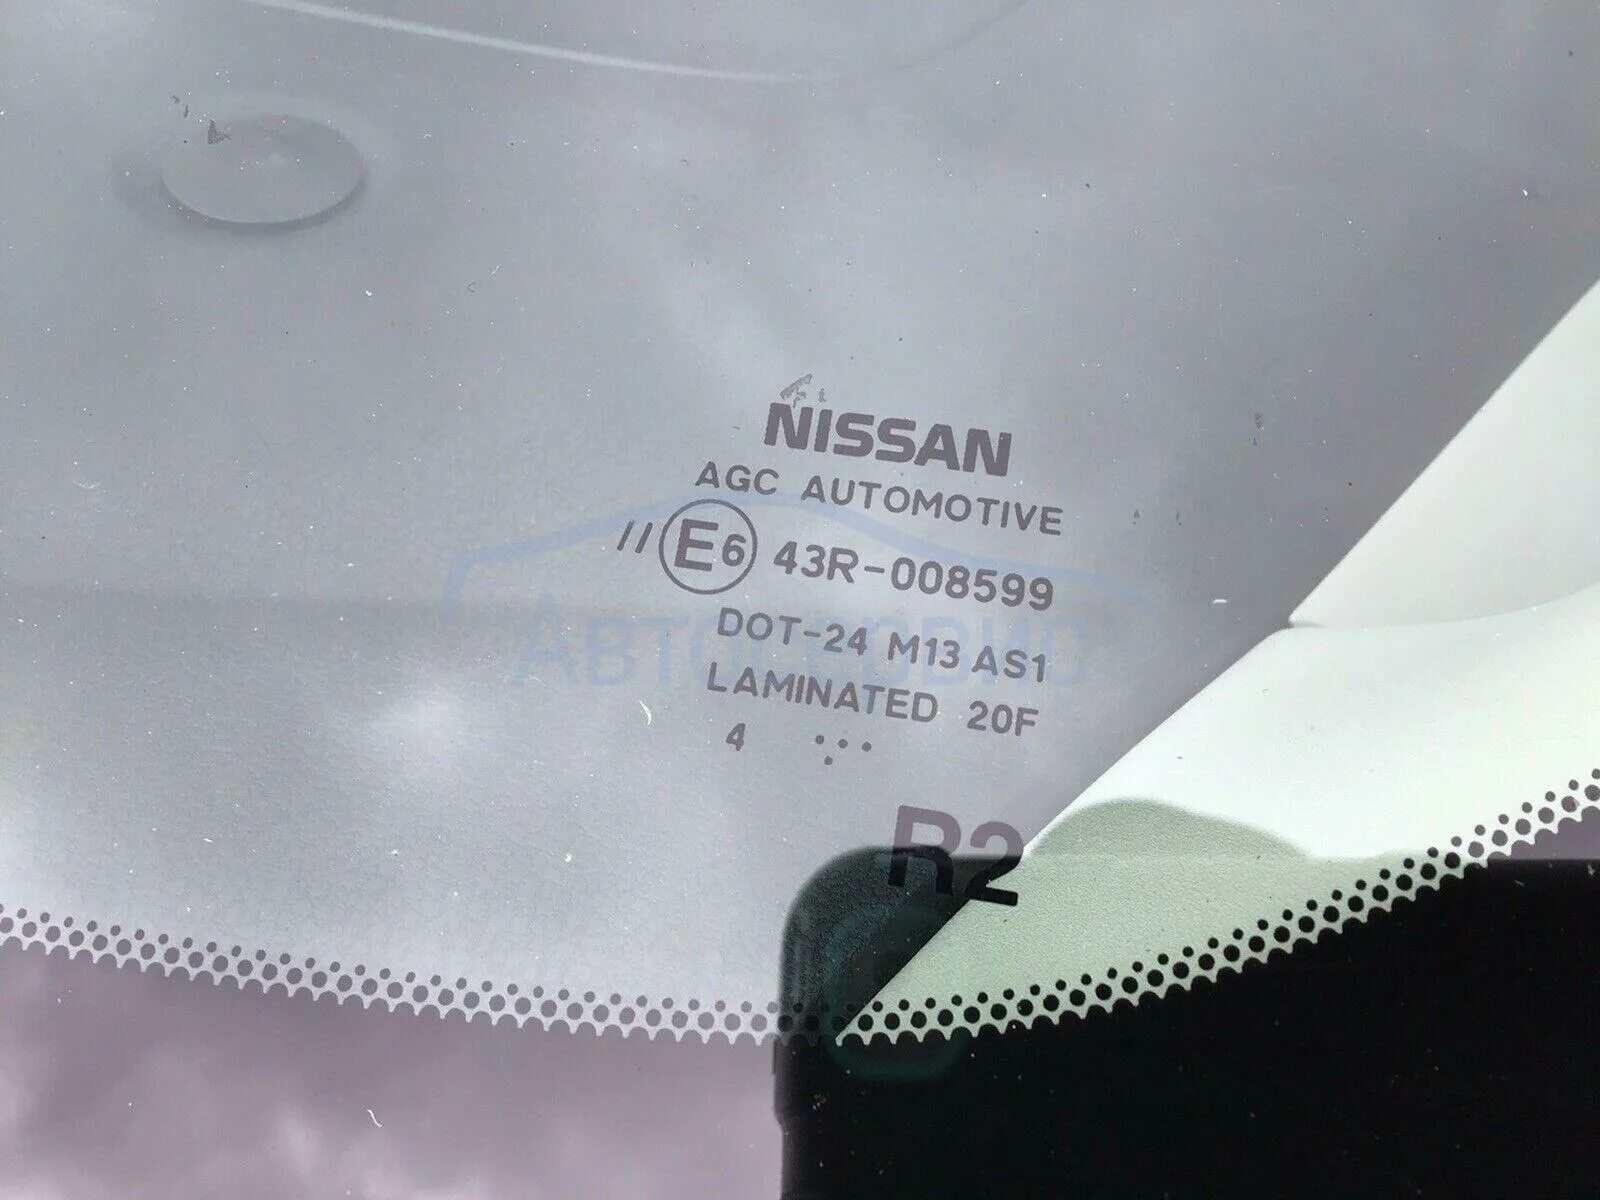 Лобовое стекло Ниссан ноут е11. Лобовое стекло Nissan Note 2015 e6 43r-00015. Nissan Note 2008 лобовое стекло КМК. Размер лобового стекла Ниссан ноут е11. Стекло nissan note